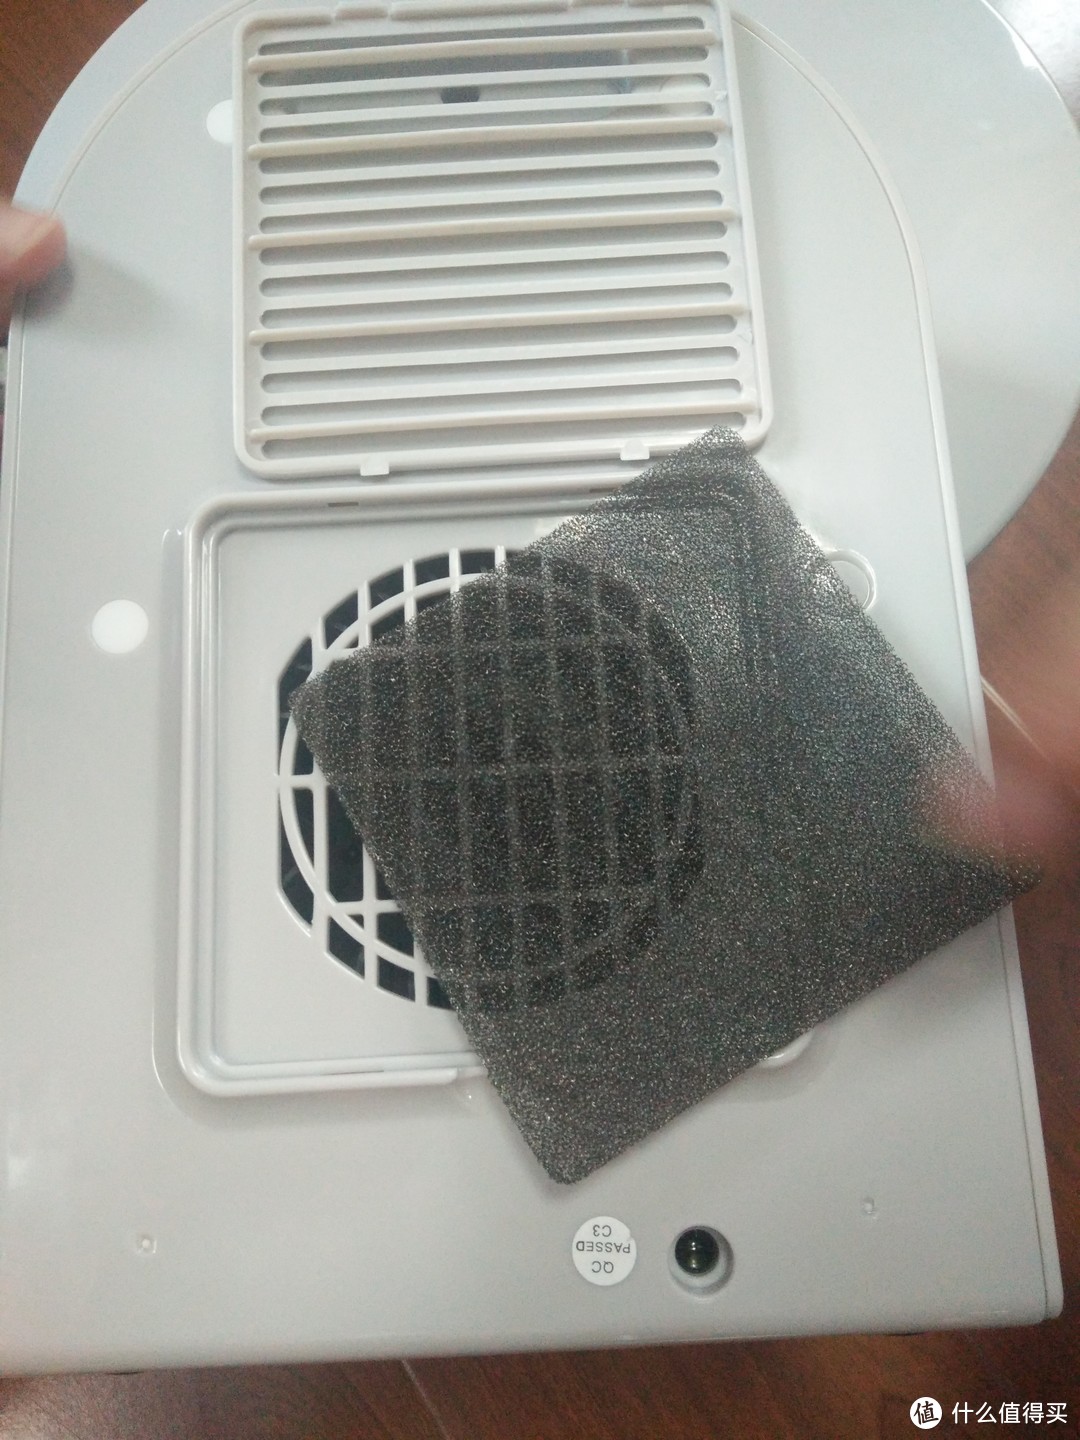 大宇纯净型加湿器开箱使用评测